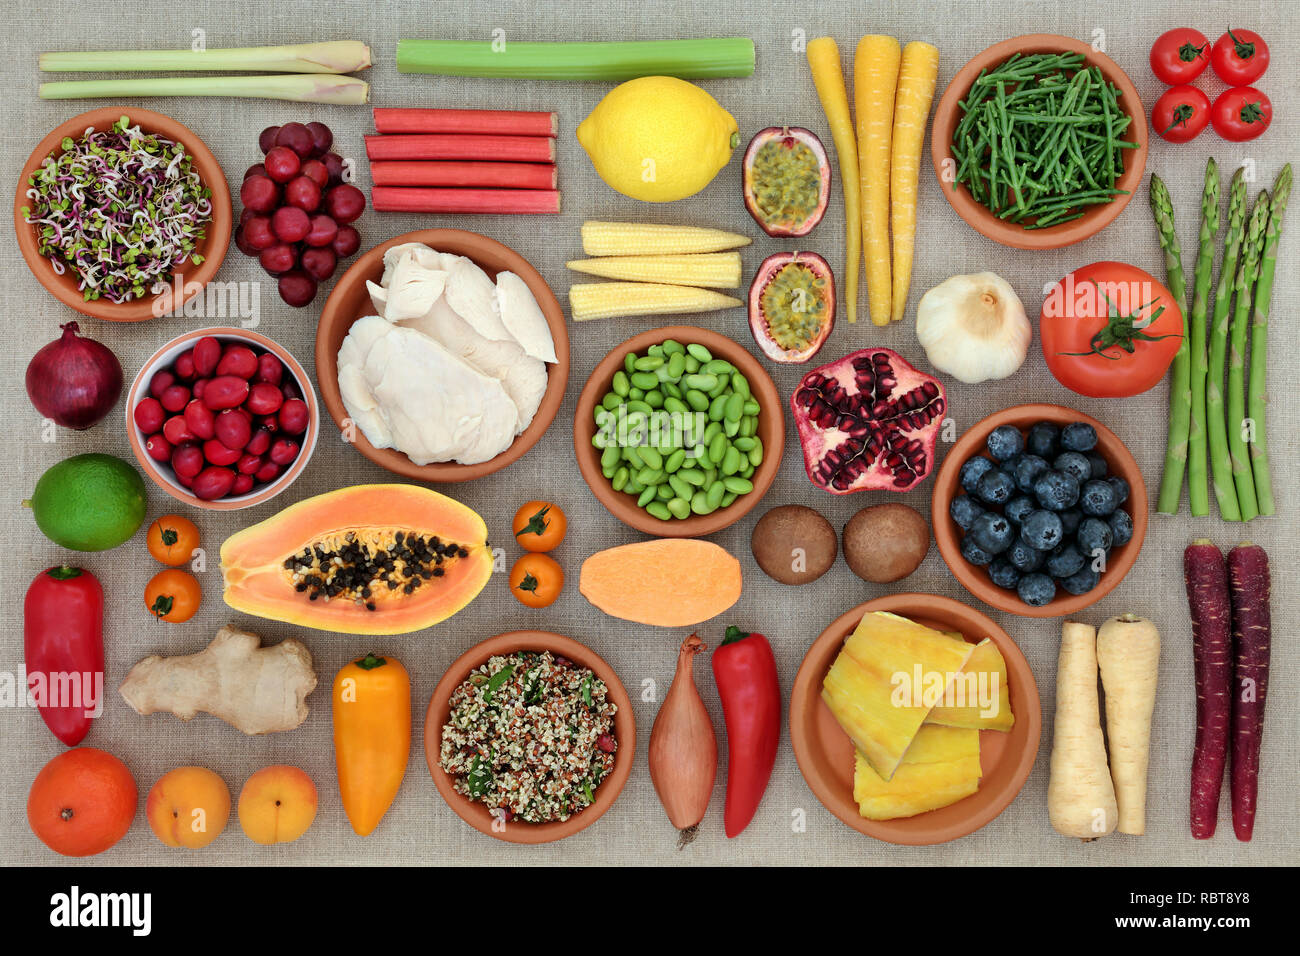 Super Essen für Fitness Concept mit Huhn, Fisch, Getreide, Obst, Gemüse, Kräutern und Gewürzen. Lebensmittel, die einen hohen Gehalt an Antioxidantien, Protein & Anthocyane, Stockfoto